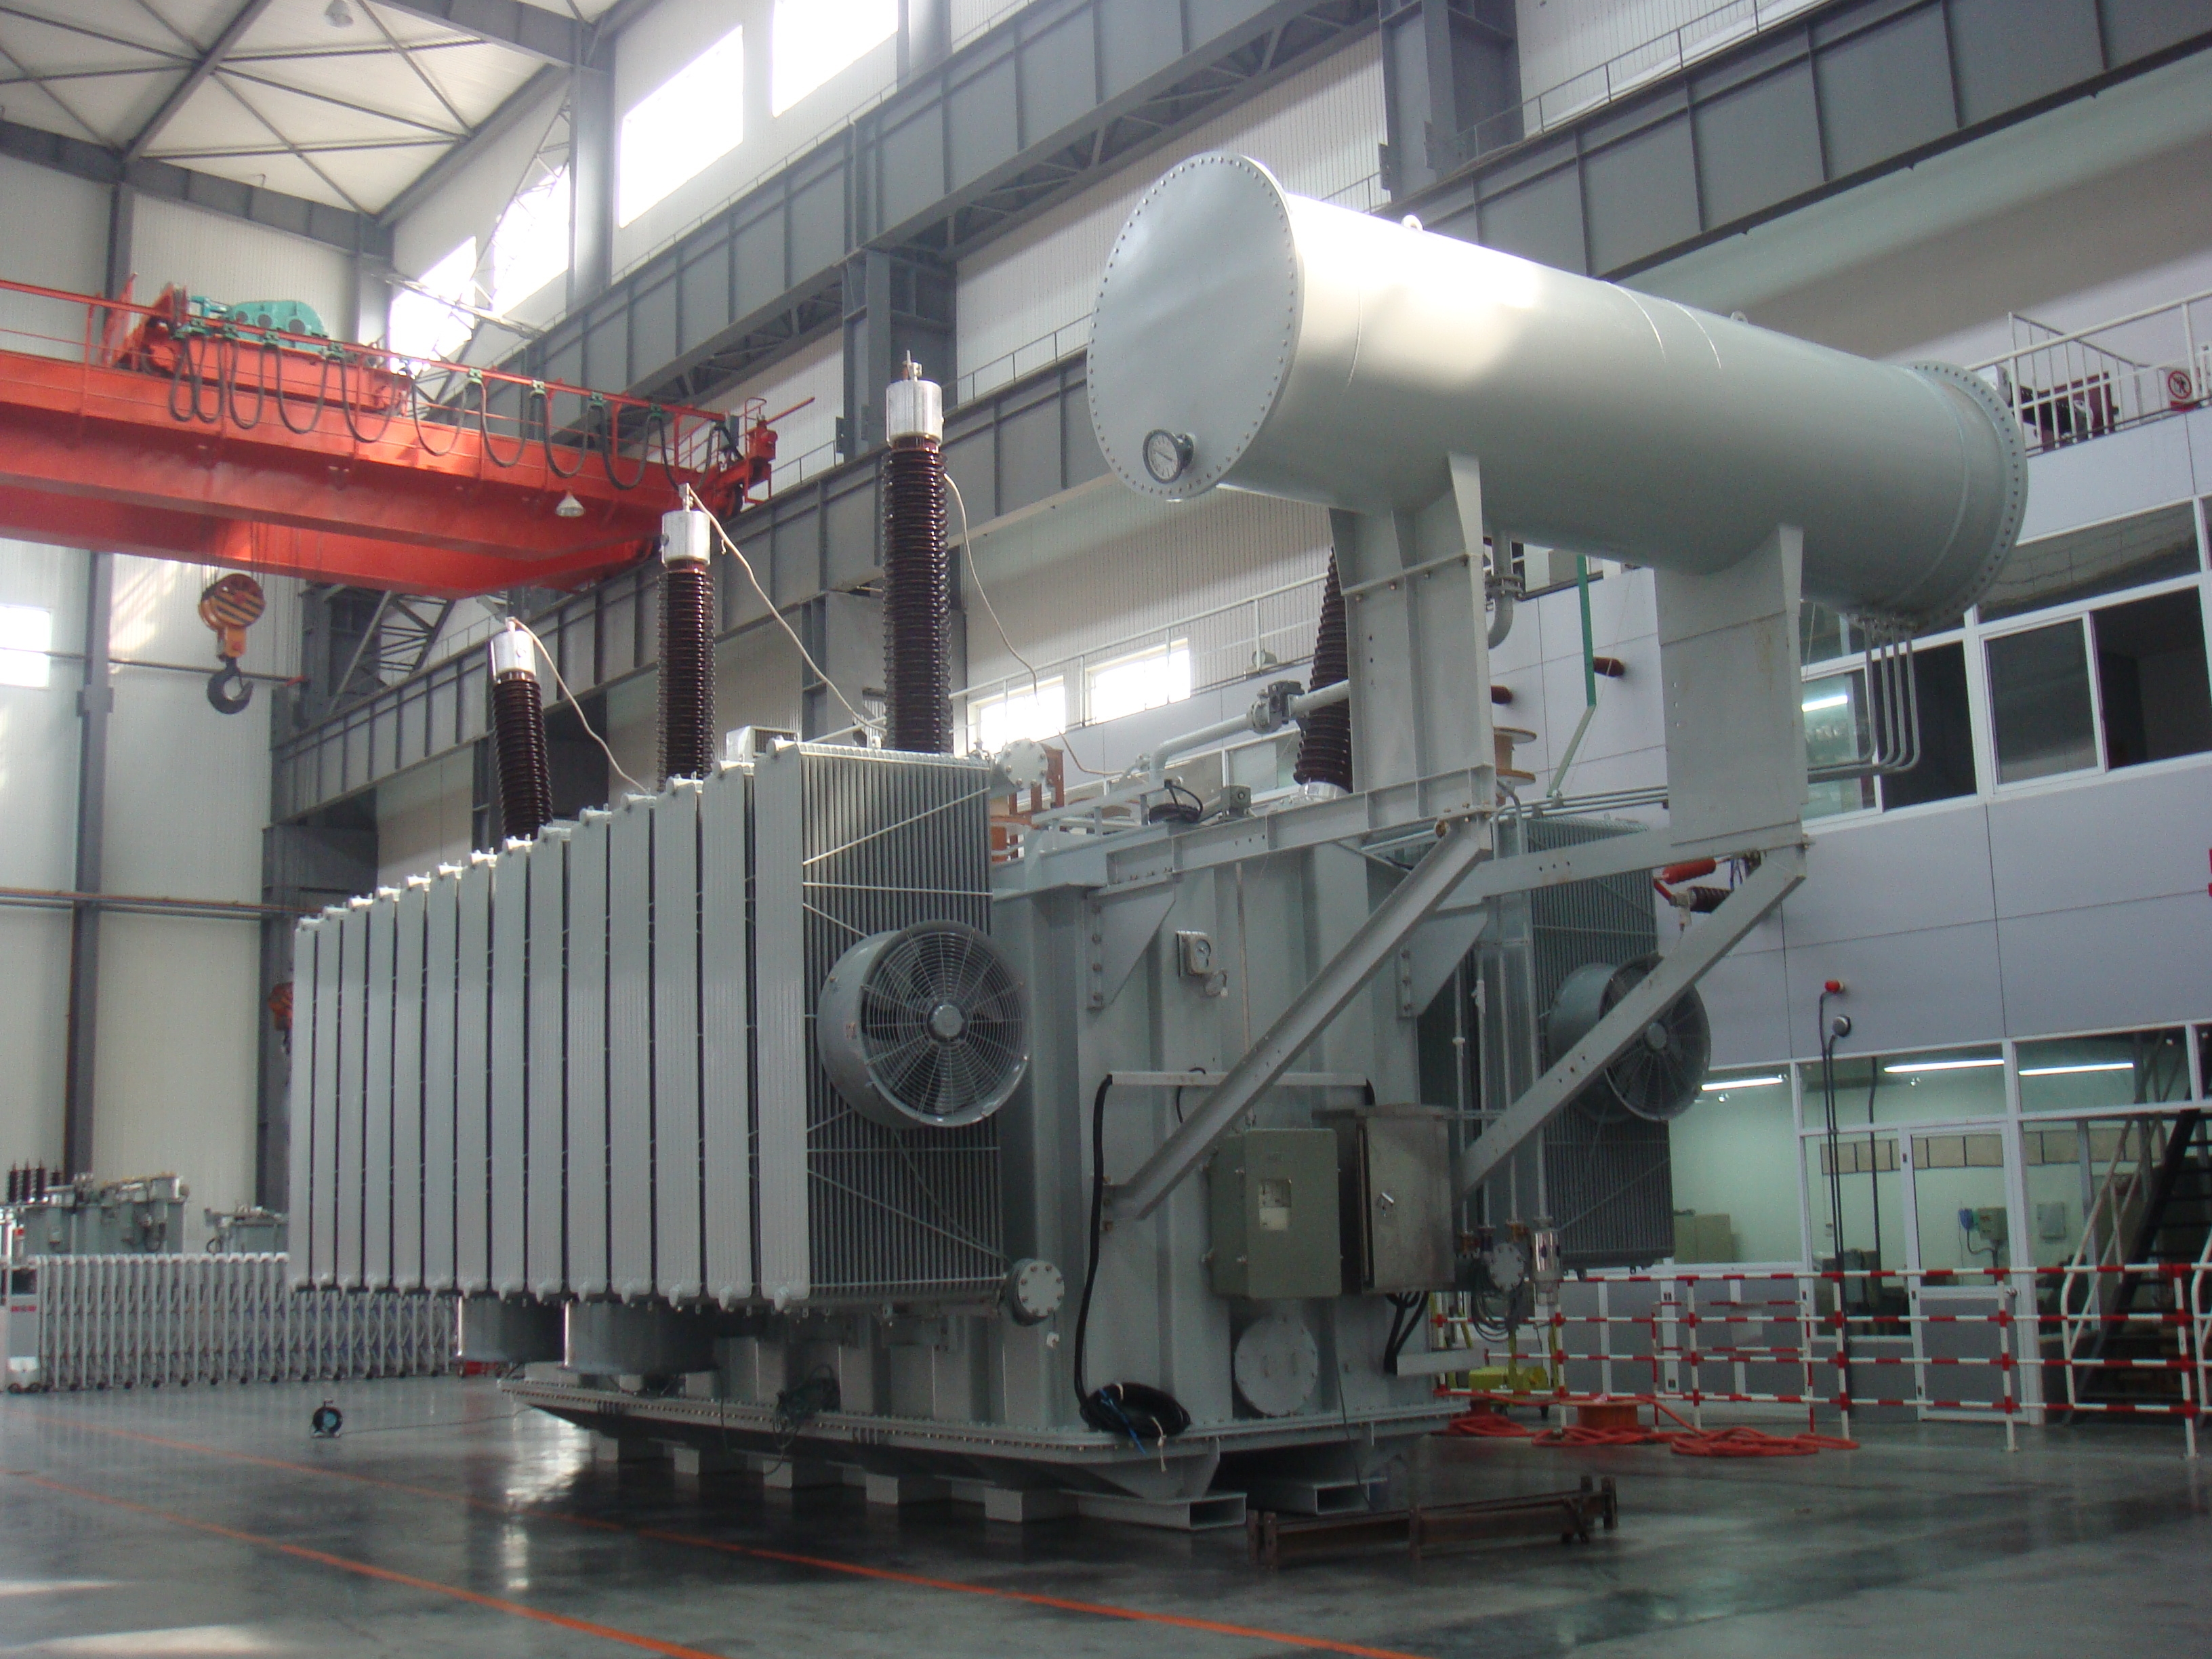 Fabrieksgoedkope hete transformatorolietanklasmachine - Volautomatische productielijn transformatorradiator - Trihope